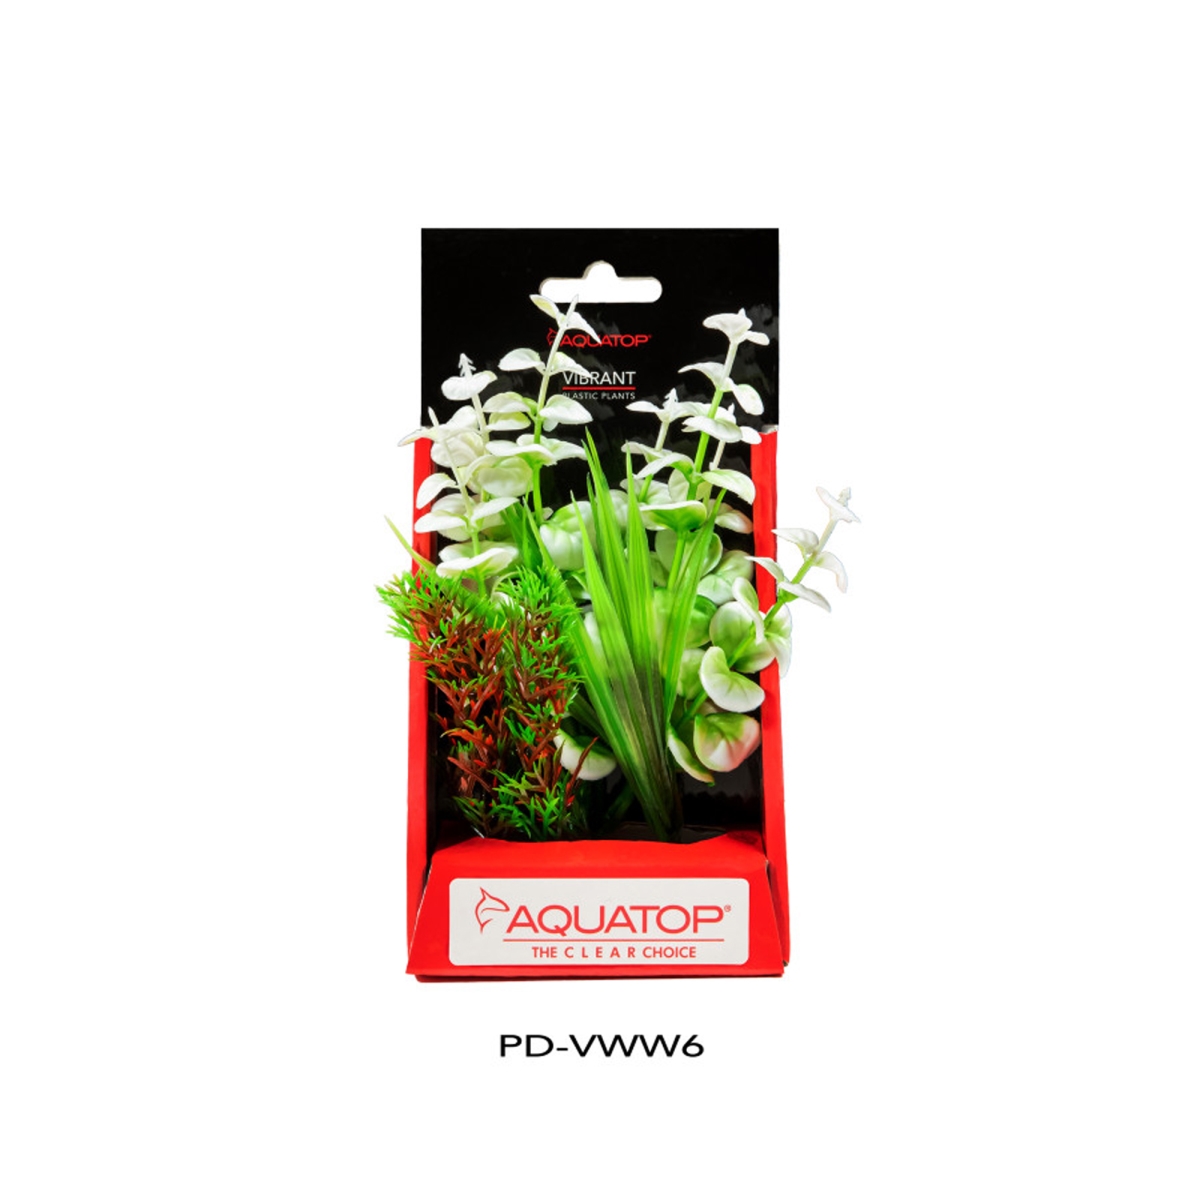 Picture of Aquatop 810074880398 Vibrant Aquarium Wild Plant - White - 6 in.